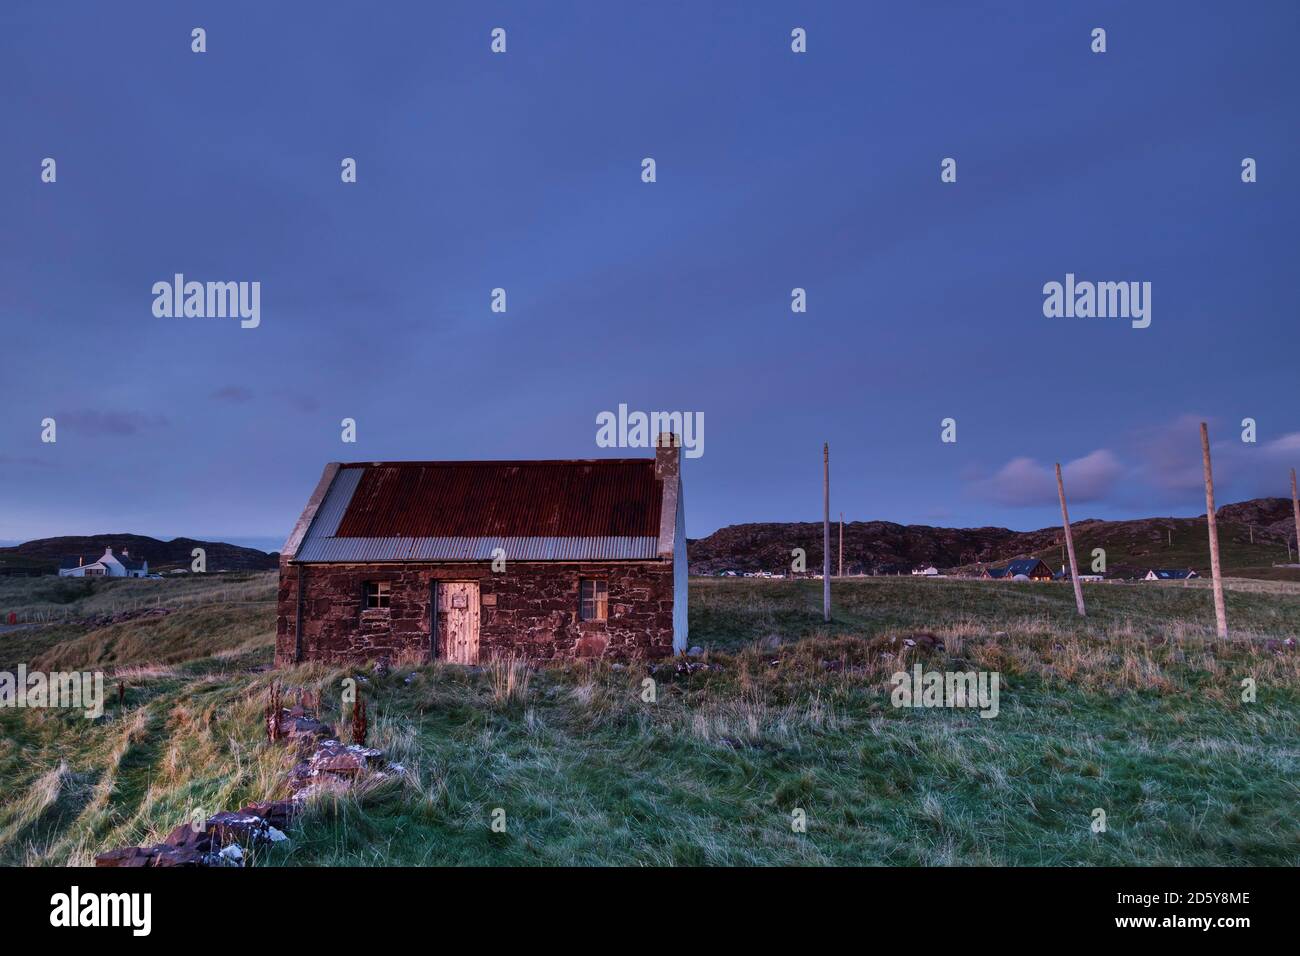 Die Clachtmaut Lachs Angeln Bothy mit Netz Trockenstellen als Nacht fällt über Clachtmaut, Assynt, NW Highlands, Schottland, Großbritannien Stockfoto